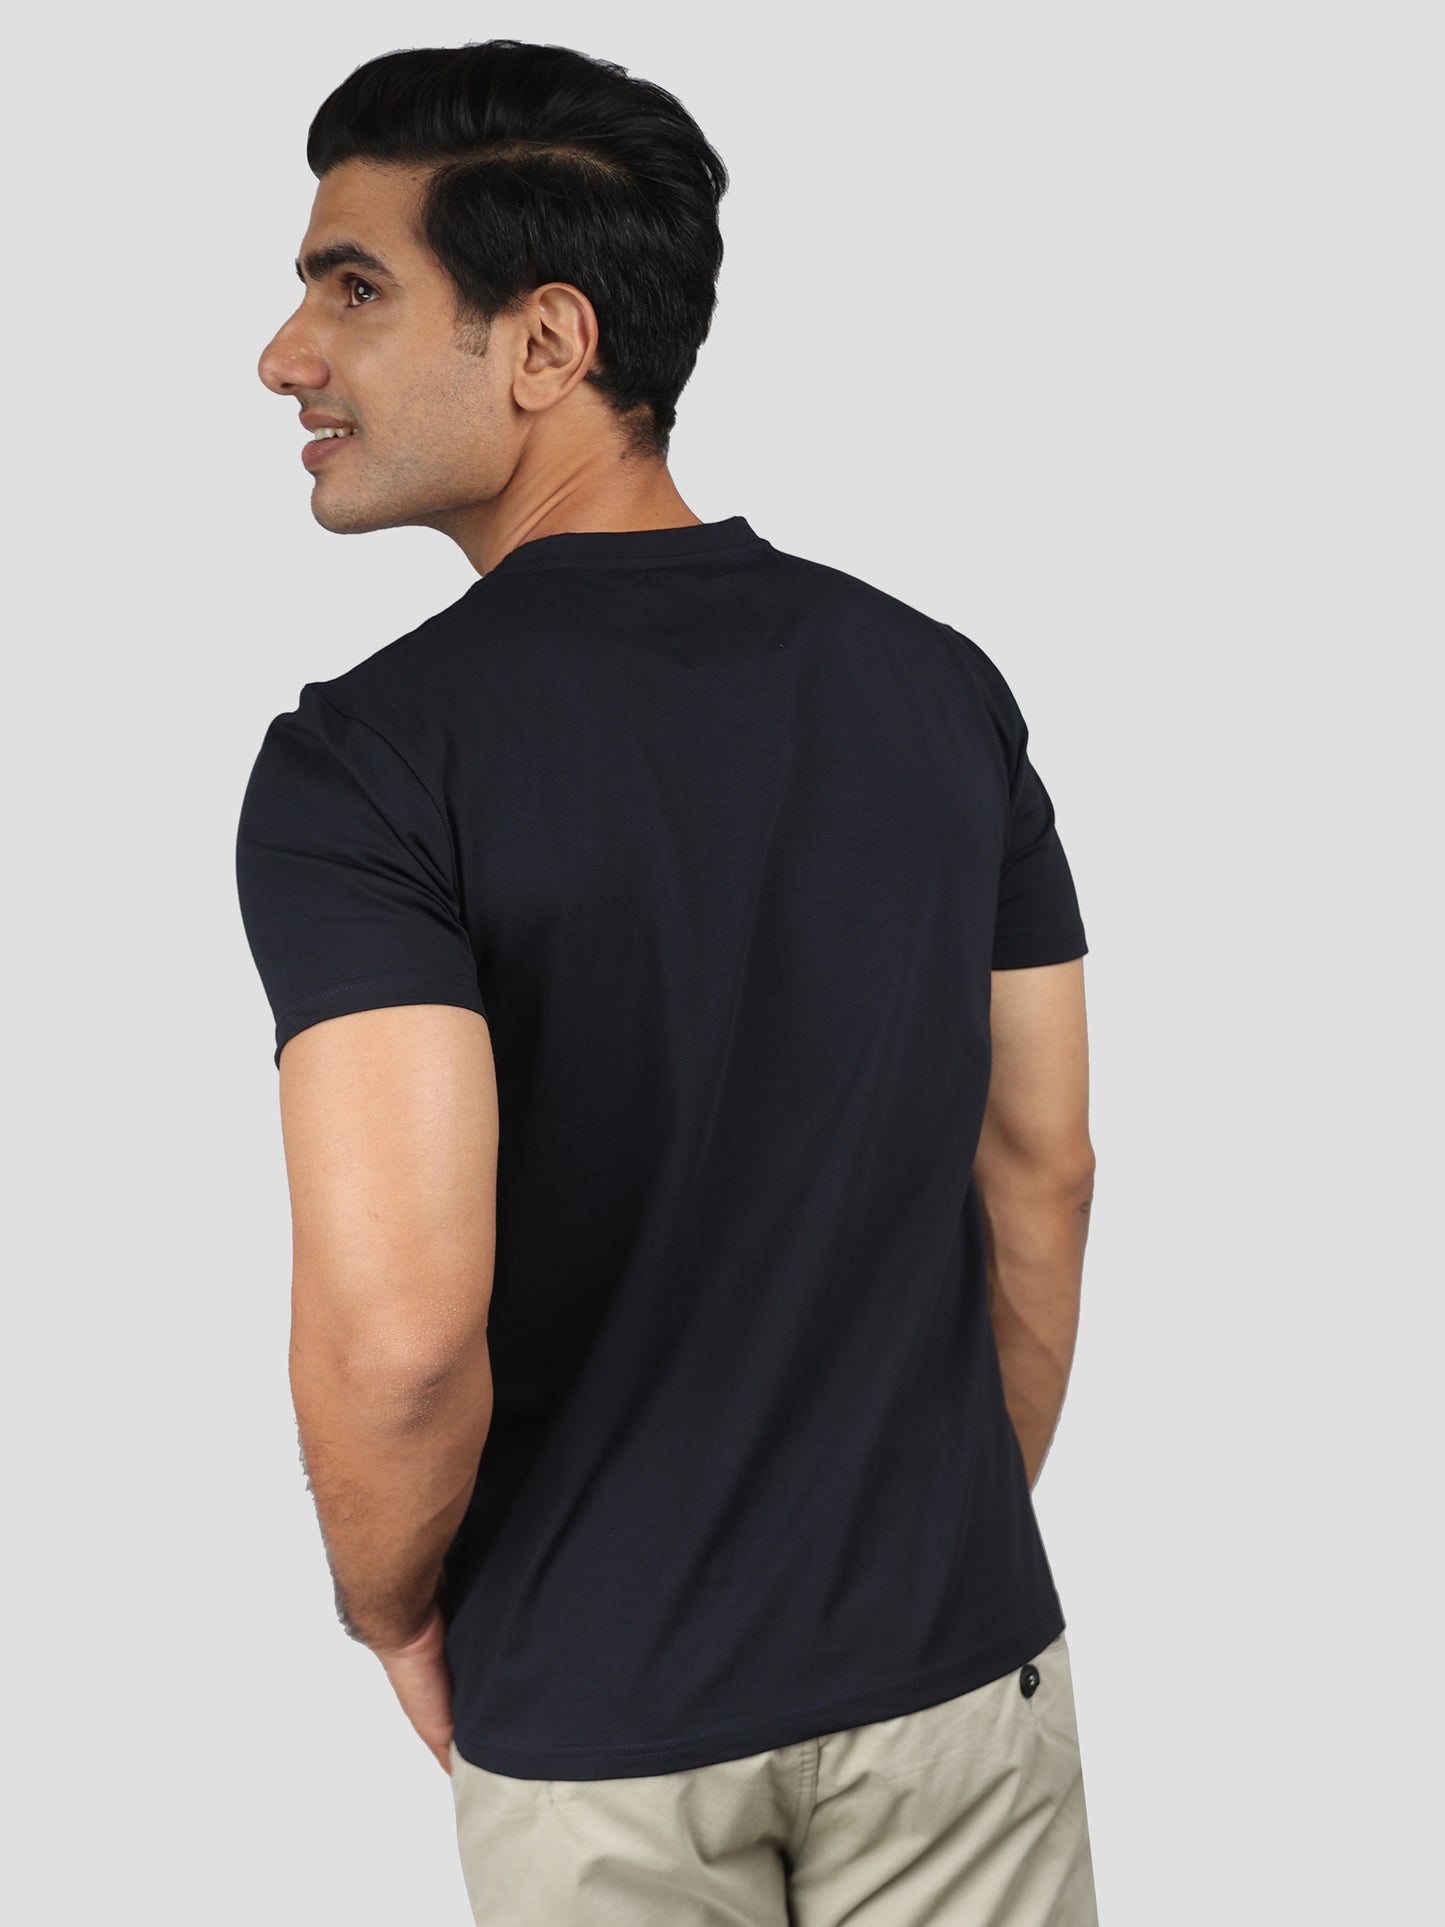 Solid Black Super Stretch Round Neck Cotton Tshirt for men